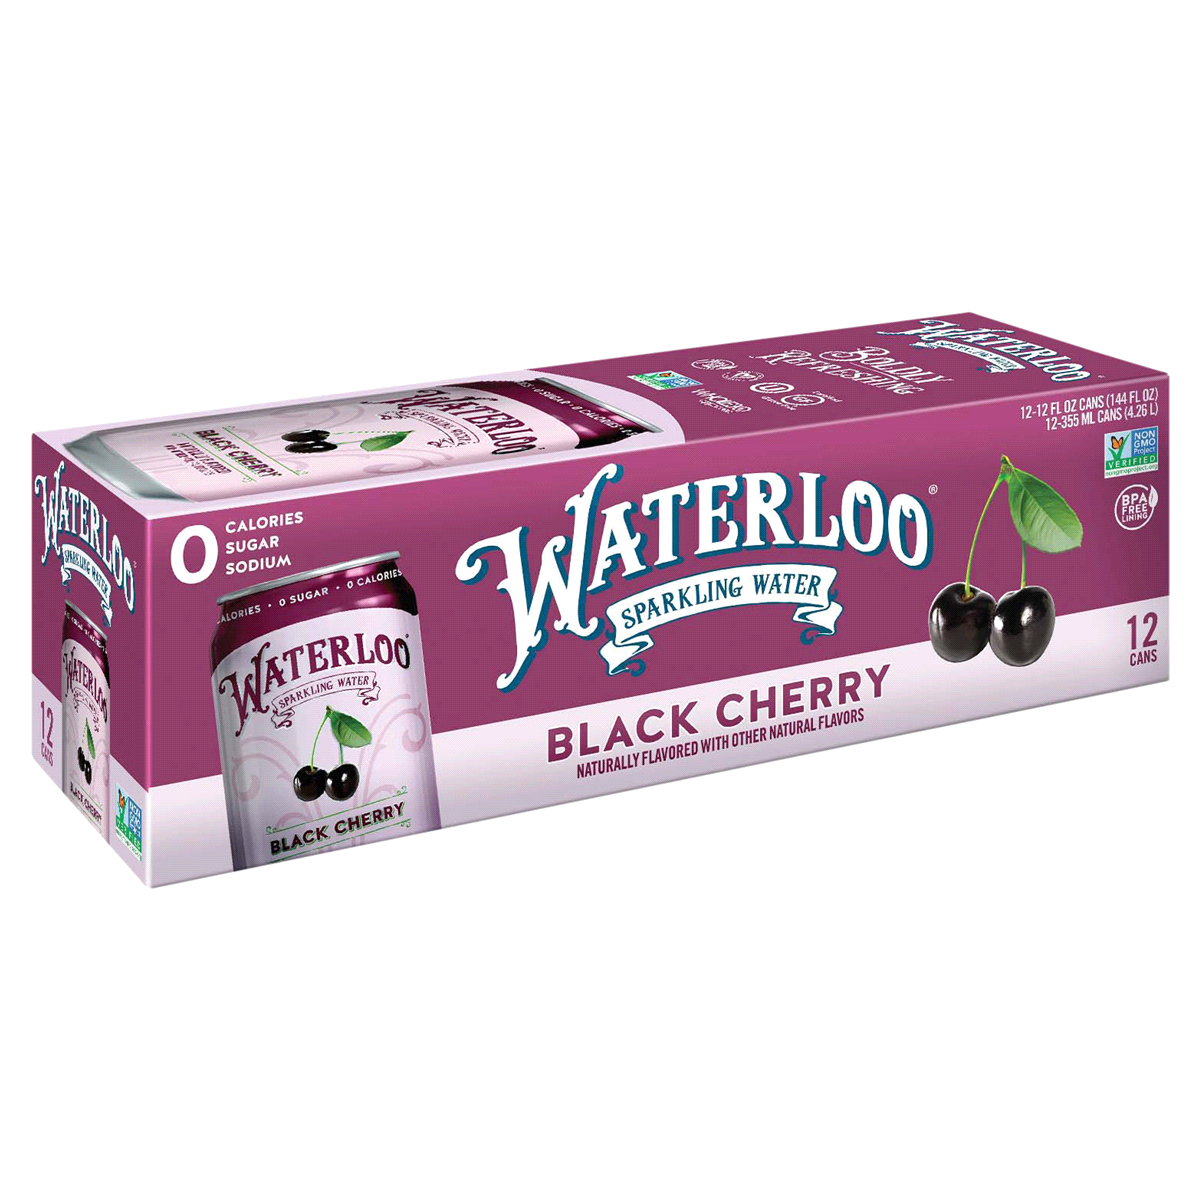 slide 1 of 1, Waterloo Black Cherry Sparkling Water, 12 ct